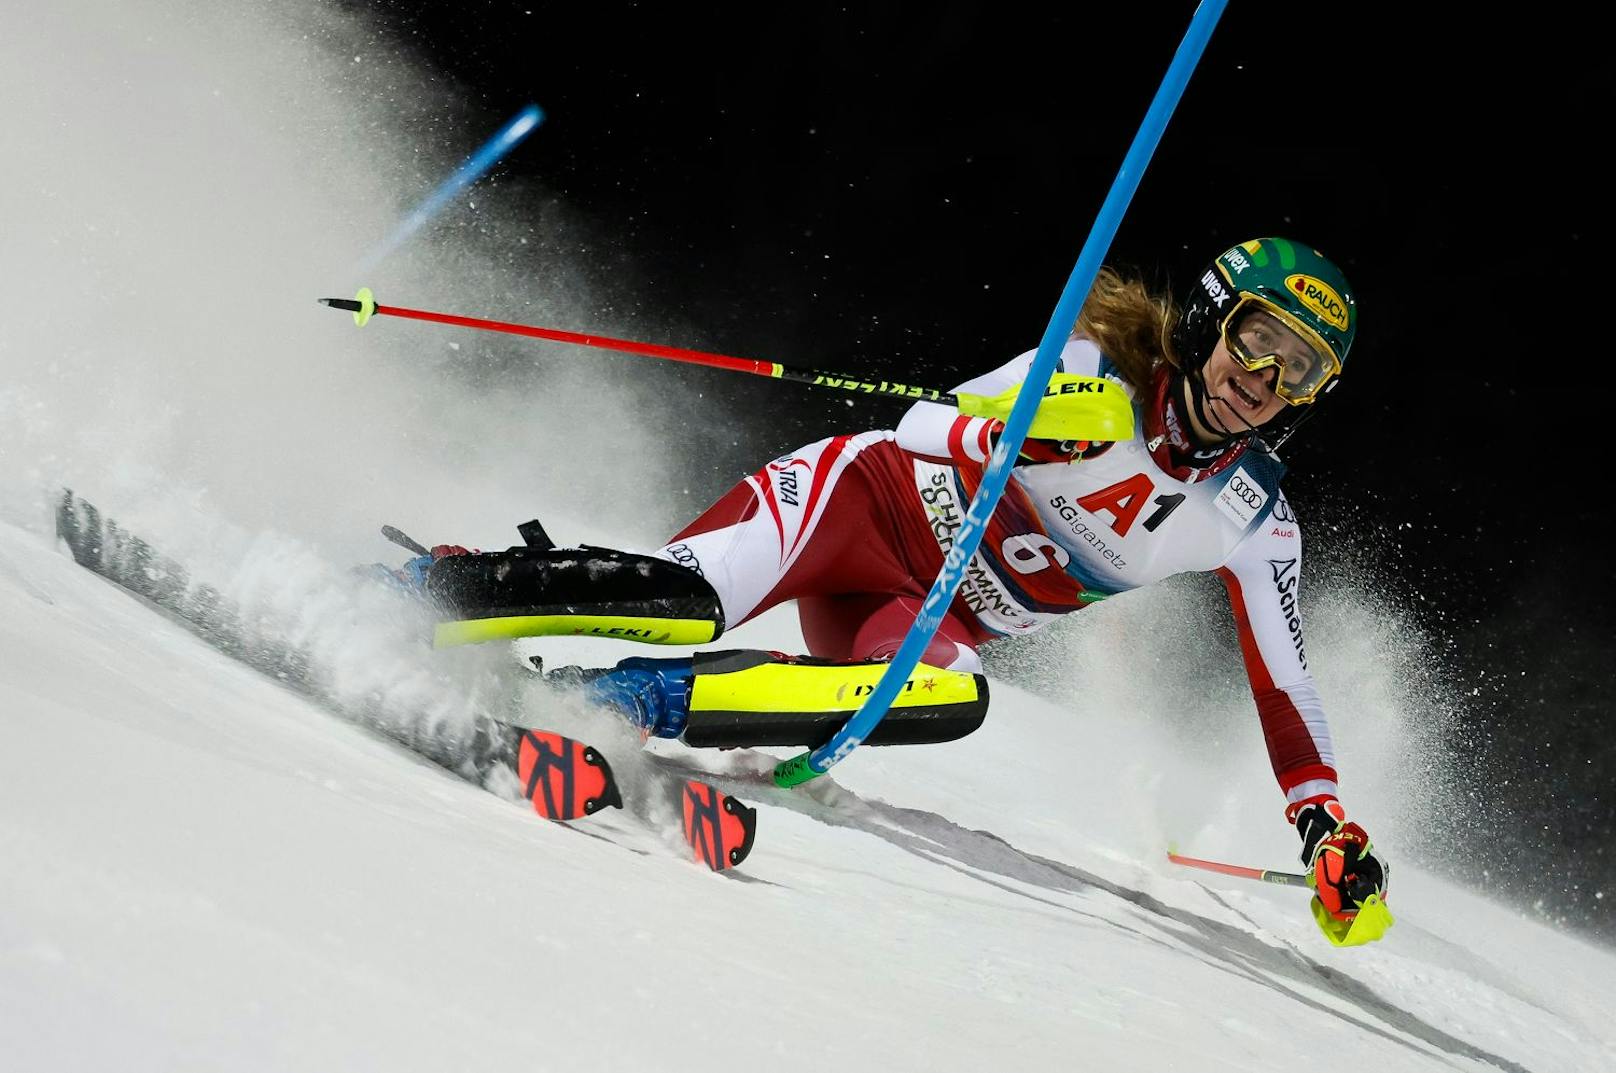 Zweiter Auftritt der Ski-Damen! Nach dem Riesenslalom folgt am Mittwoch (9.2.) der Slalom (3.15 – 8.45 Uhr).